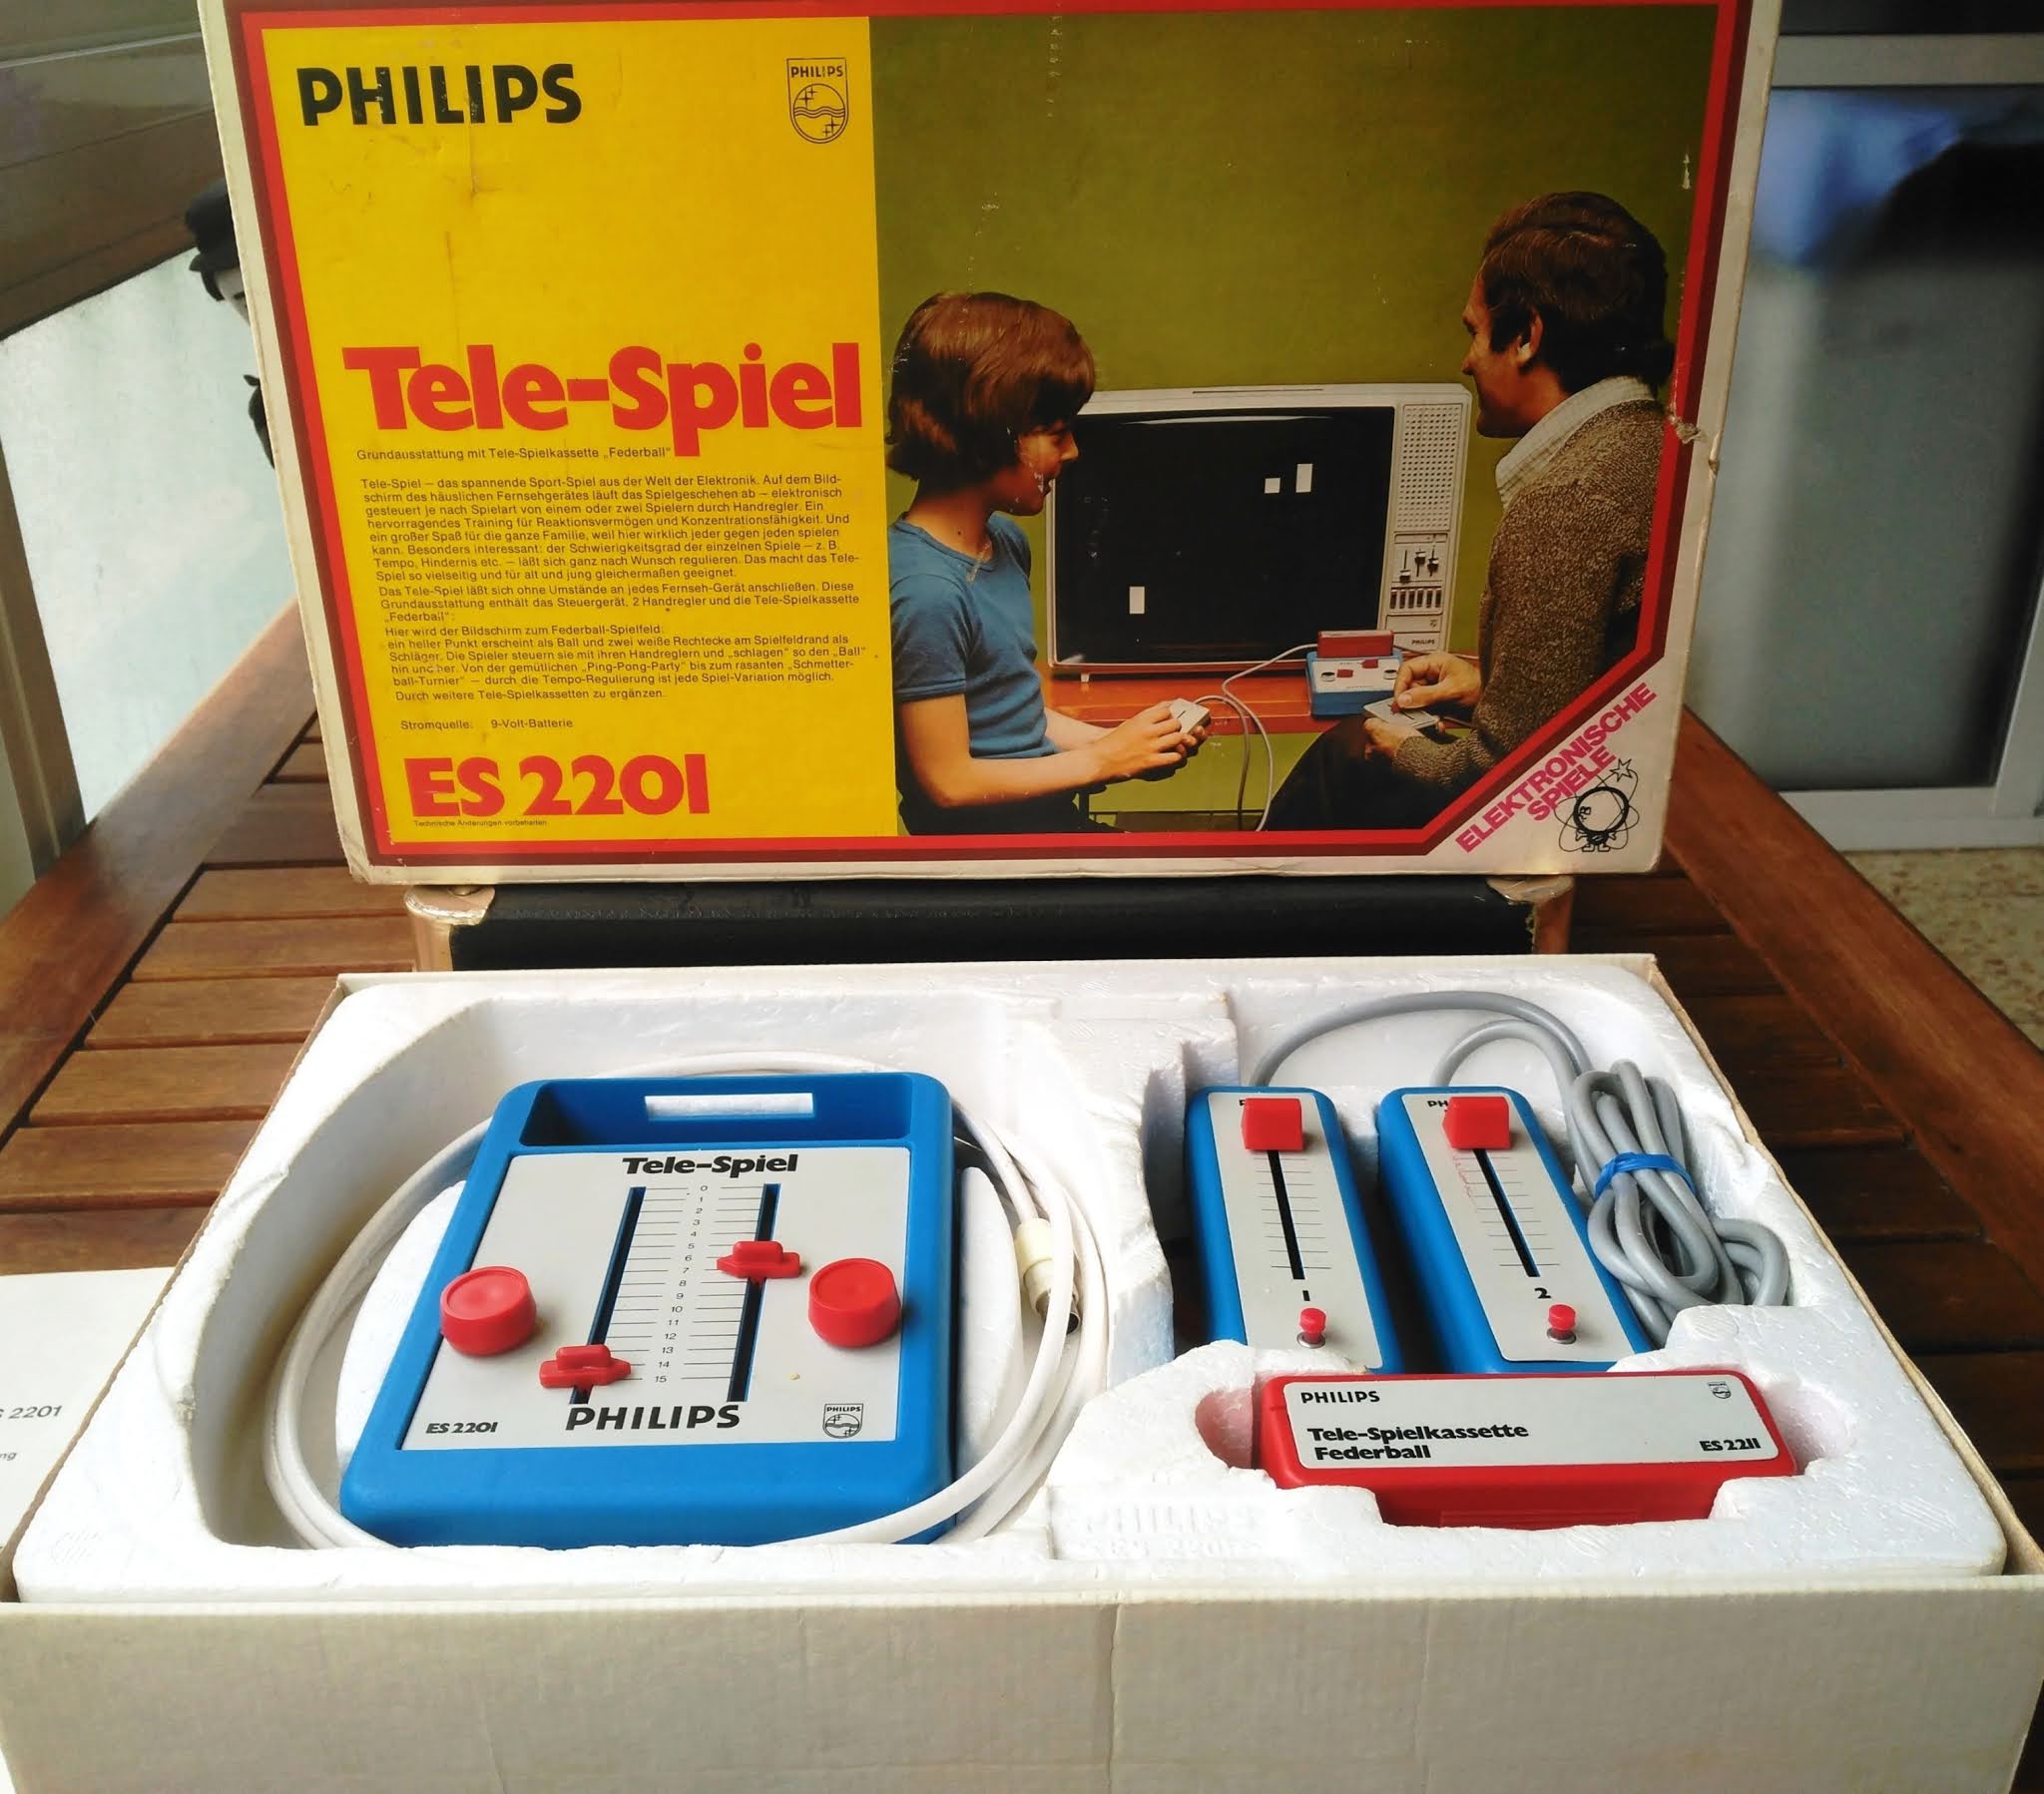 puberty Municipalities Bank Retro Ordenadores Orty: Consola Philips Tele-Spiel ES 2201 (1975)